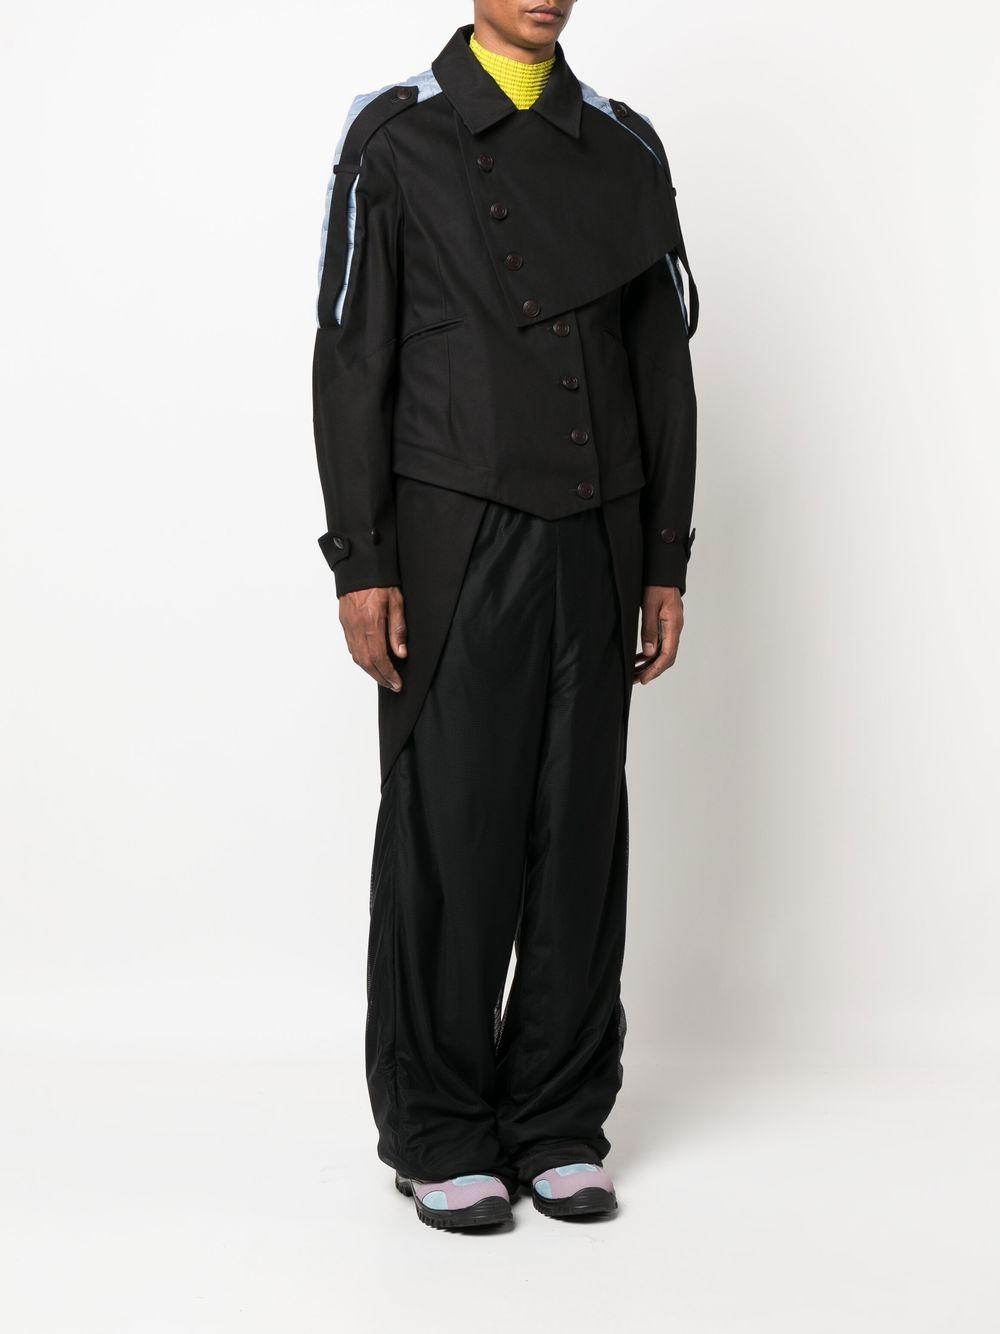 Kiko Kostadinov Aden Transform Overcoat - Farfetch